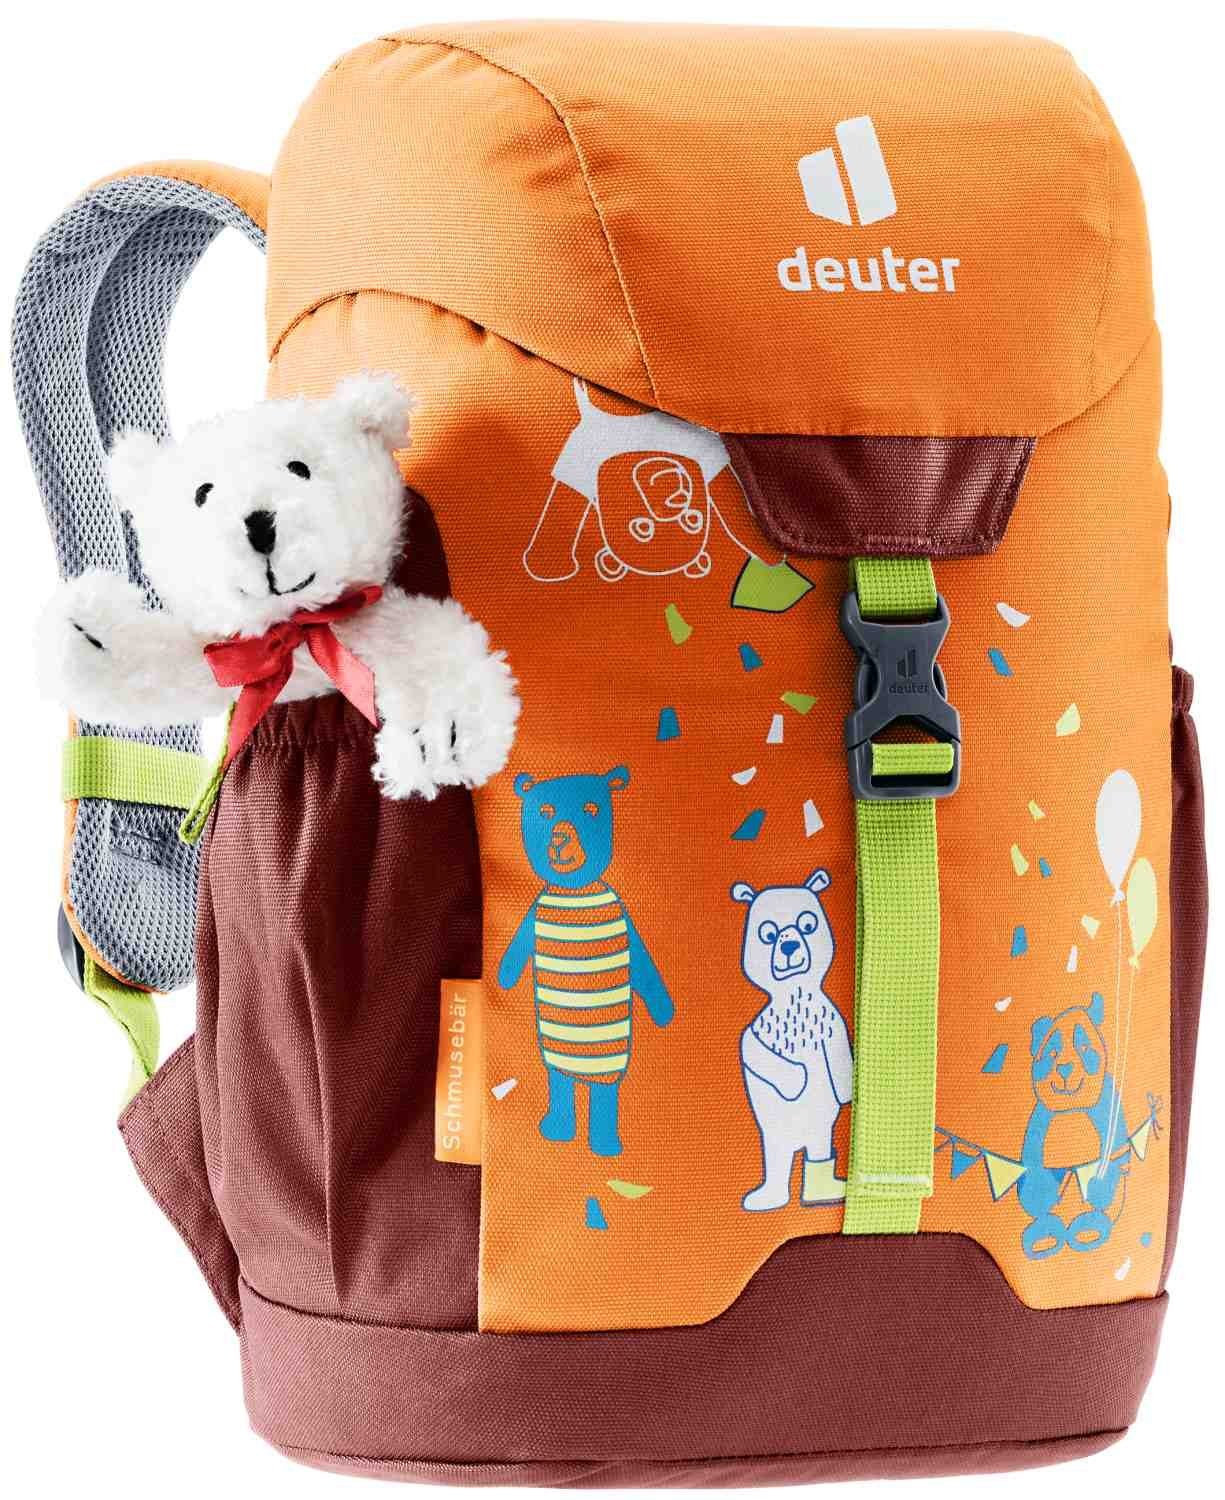 deuter deuter Babystiefel Kinderrucksack mandarine-redwood Schmusebär mit Teddybär